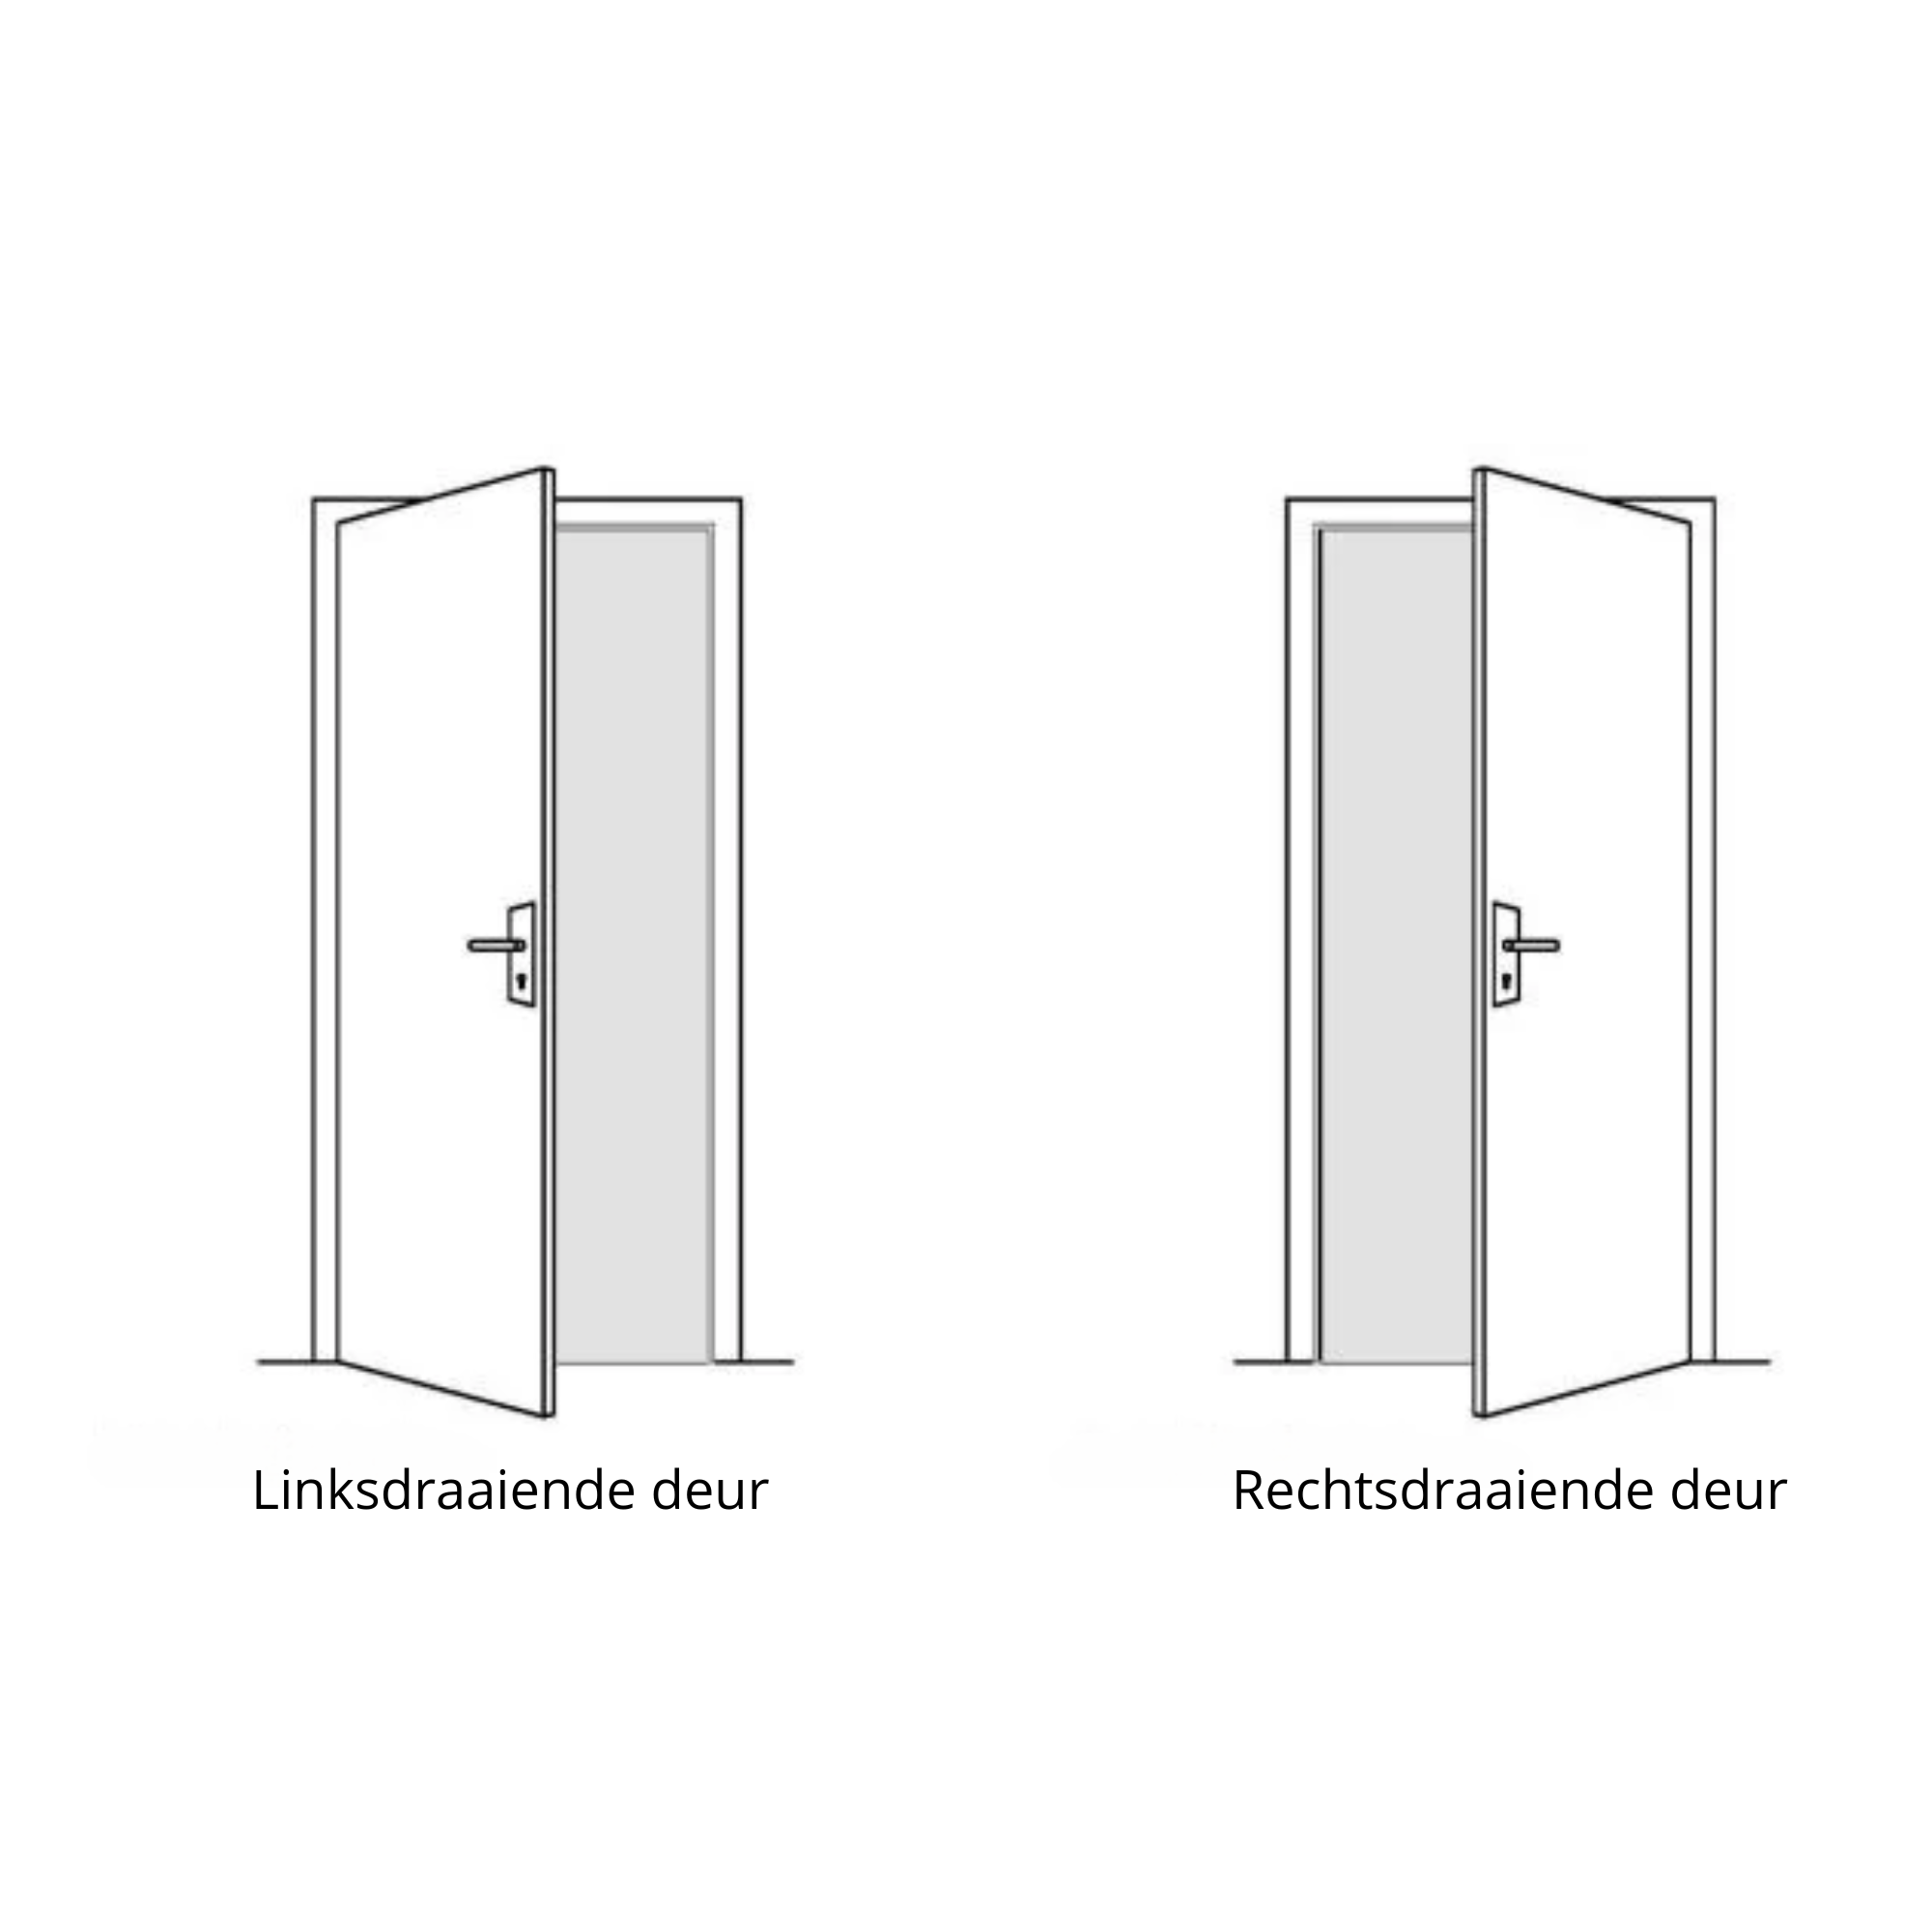 Wat is de draairichting van een deur?